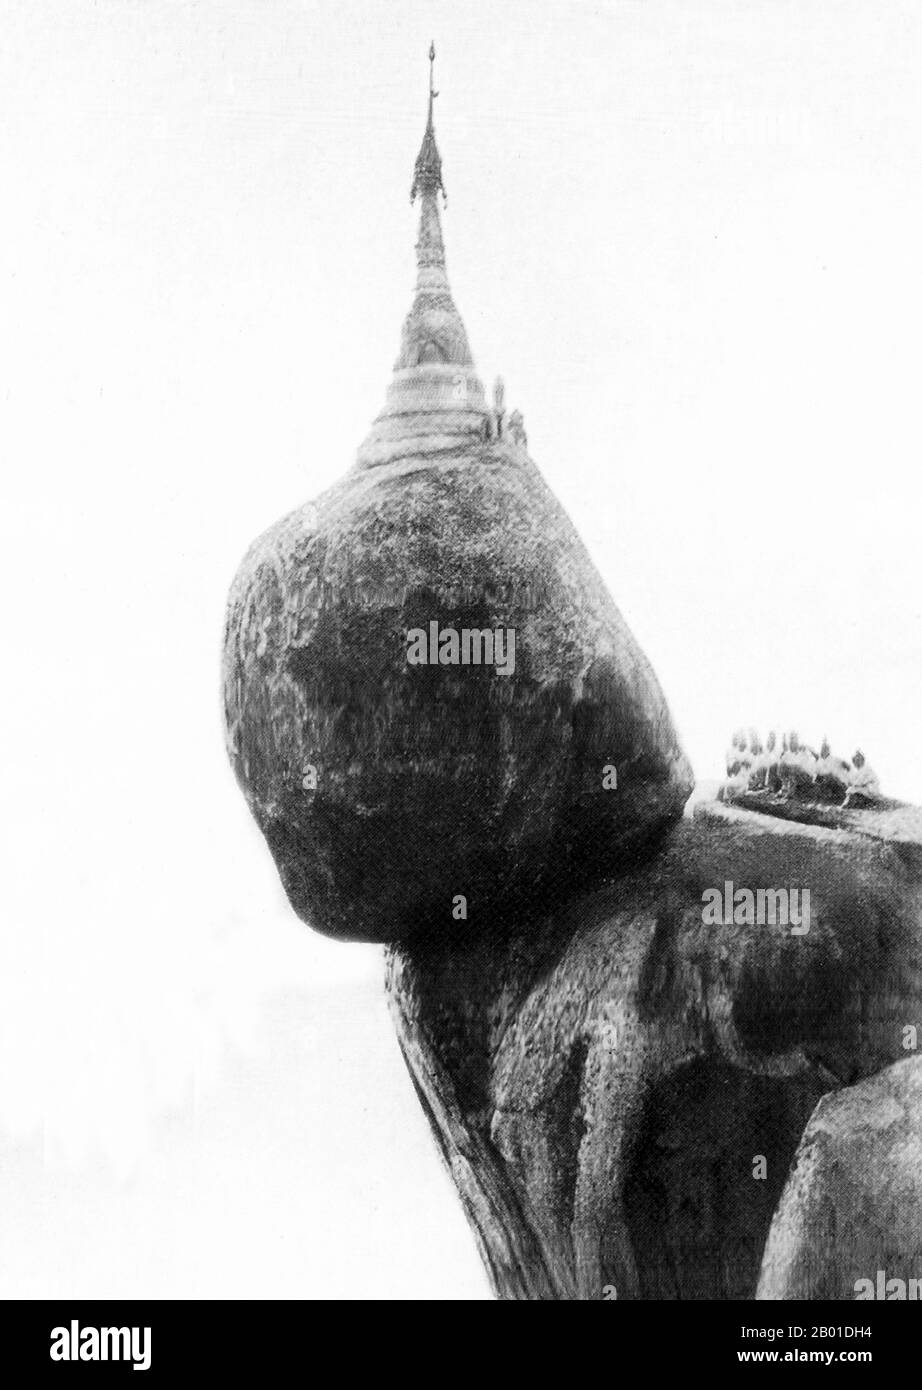 Birma: Kyaiktiyo Pagoda, c. 1892-1896. Die Kyaiktiyo-Pagode (auch bekannt als Goldener Felsen) ist eine bekannte buddhistische Pilgerstätte im Staat Mon im Osten Birmas. Es ist eine kleine Pagode (7,3 Meter (24 Fuß)), erbaut auf einem Granitfelsen, der mit Goldblättern bedeckt ist, die von Gläubigen angeklebt wurden. Der Legende nach befindet sich der Goldene Felsen selbst auf einem Strang von Buddhas Haaren. Der Felsen scheint der Schwerkraft zu trotzen, da er ständig am Rande des Bergabrollens zu stehen scheint. Stockfoto